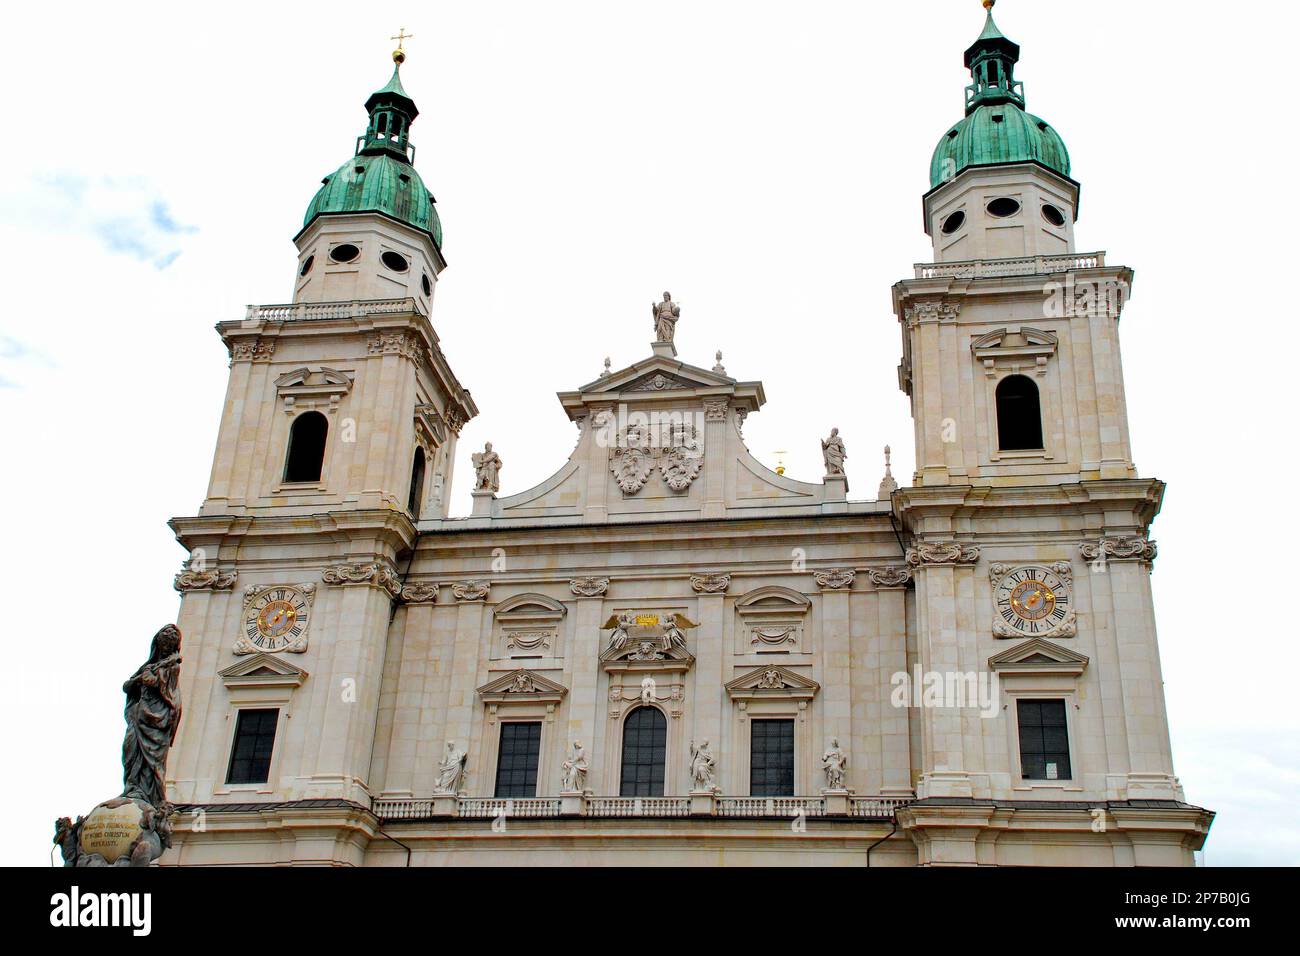 La cathédrale de Salzbourg, est la cathédrale baroque du XVIIe siècle, dédiée à Saint Rupert et Saint Vergilius, Salzbourg, Autriche, Europe Banque D'Images